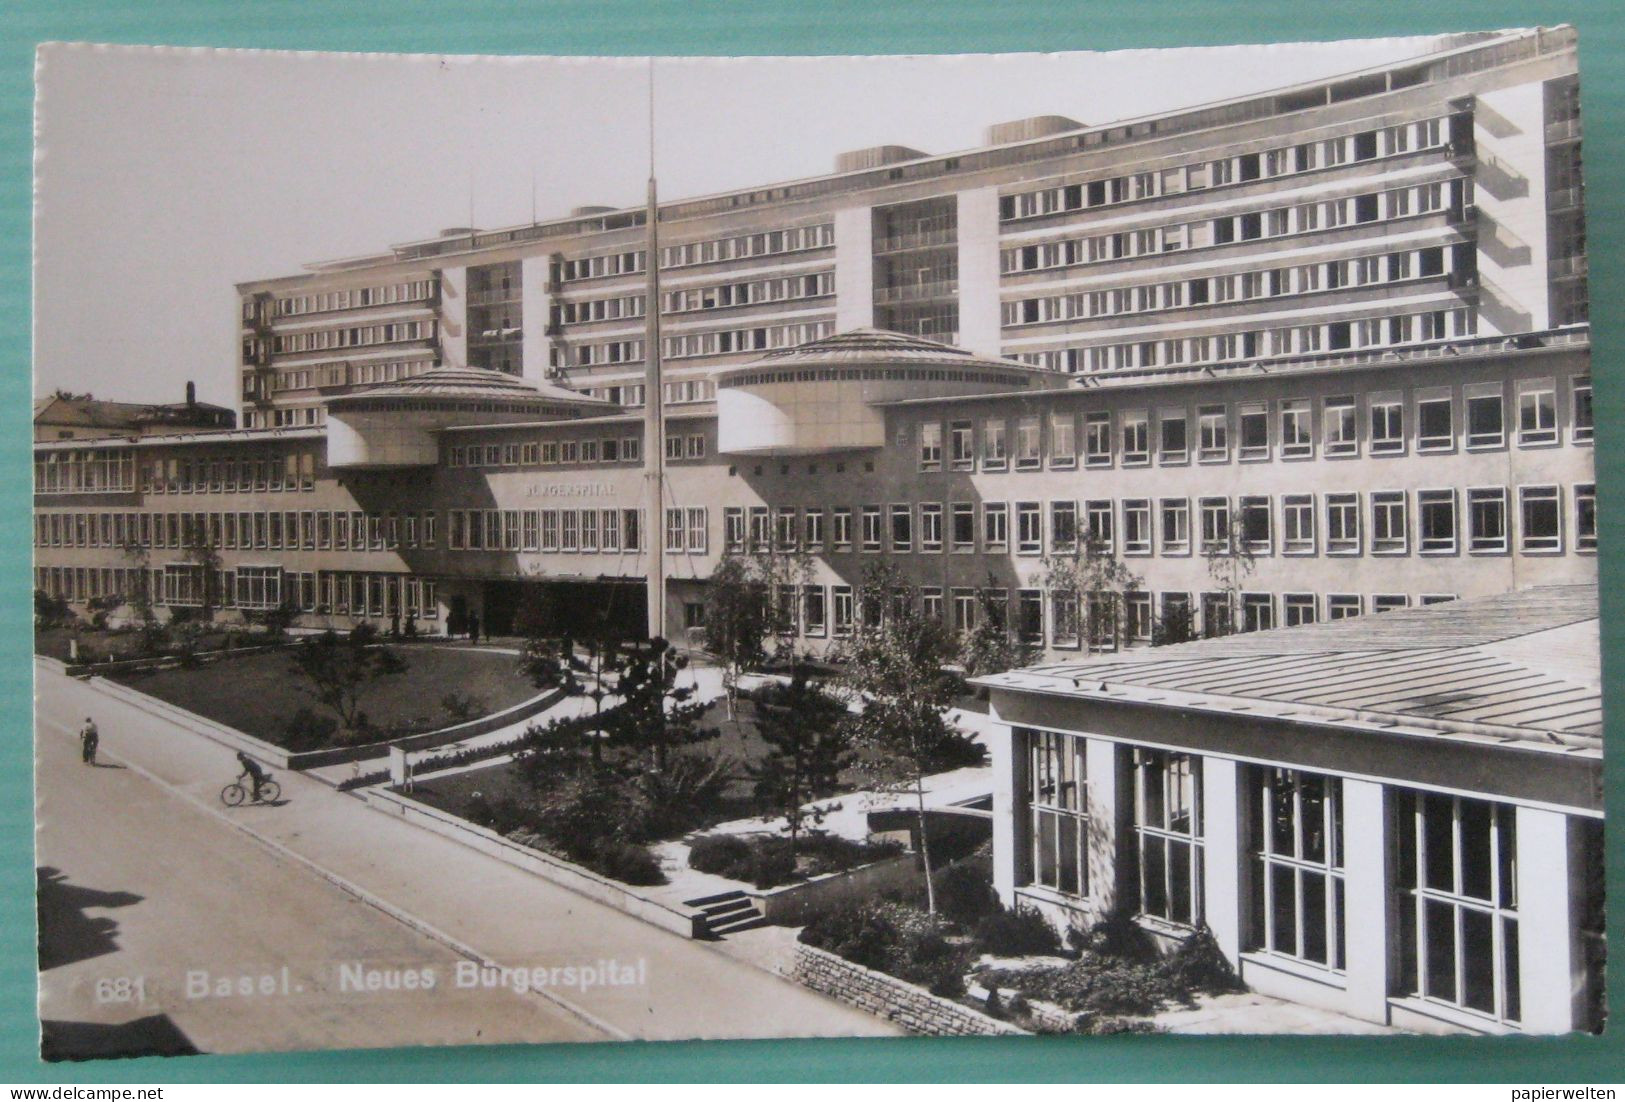 Basel - Neues Bürgerspital - Bazel